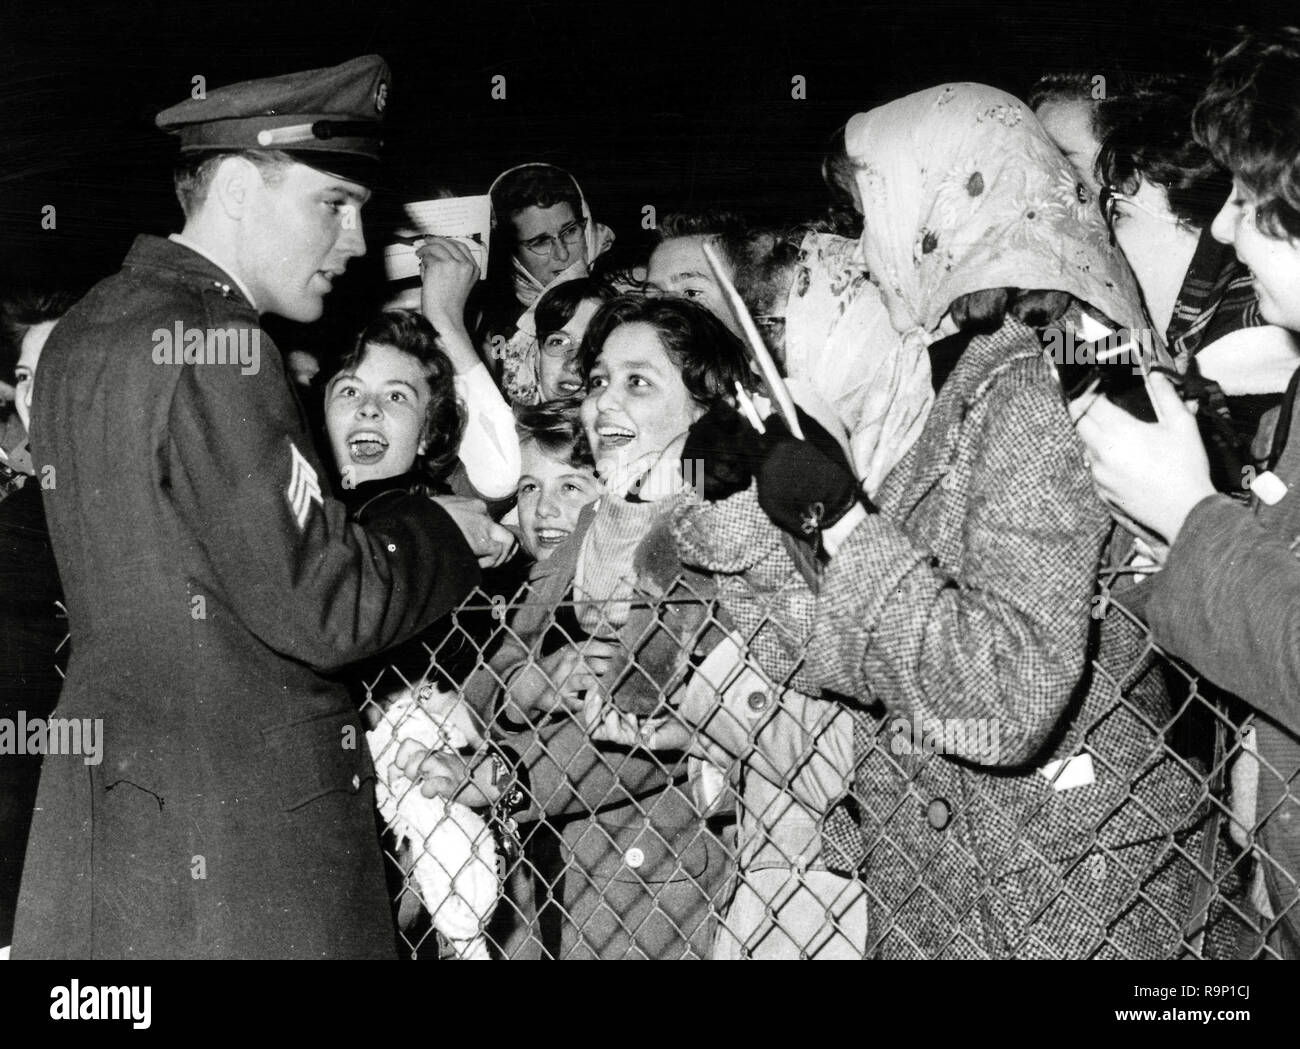 Elvis Presley, signe des autographes pour ses fans à l'aéroport de Prestwick, en Ecosse, 1960 Référence du dossier #  33635 833THA Banque D'Images